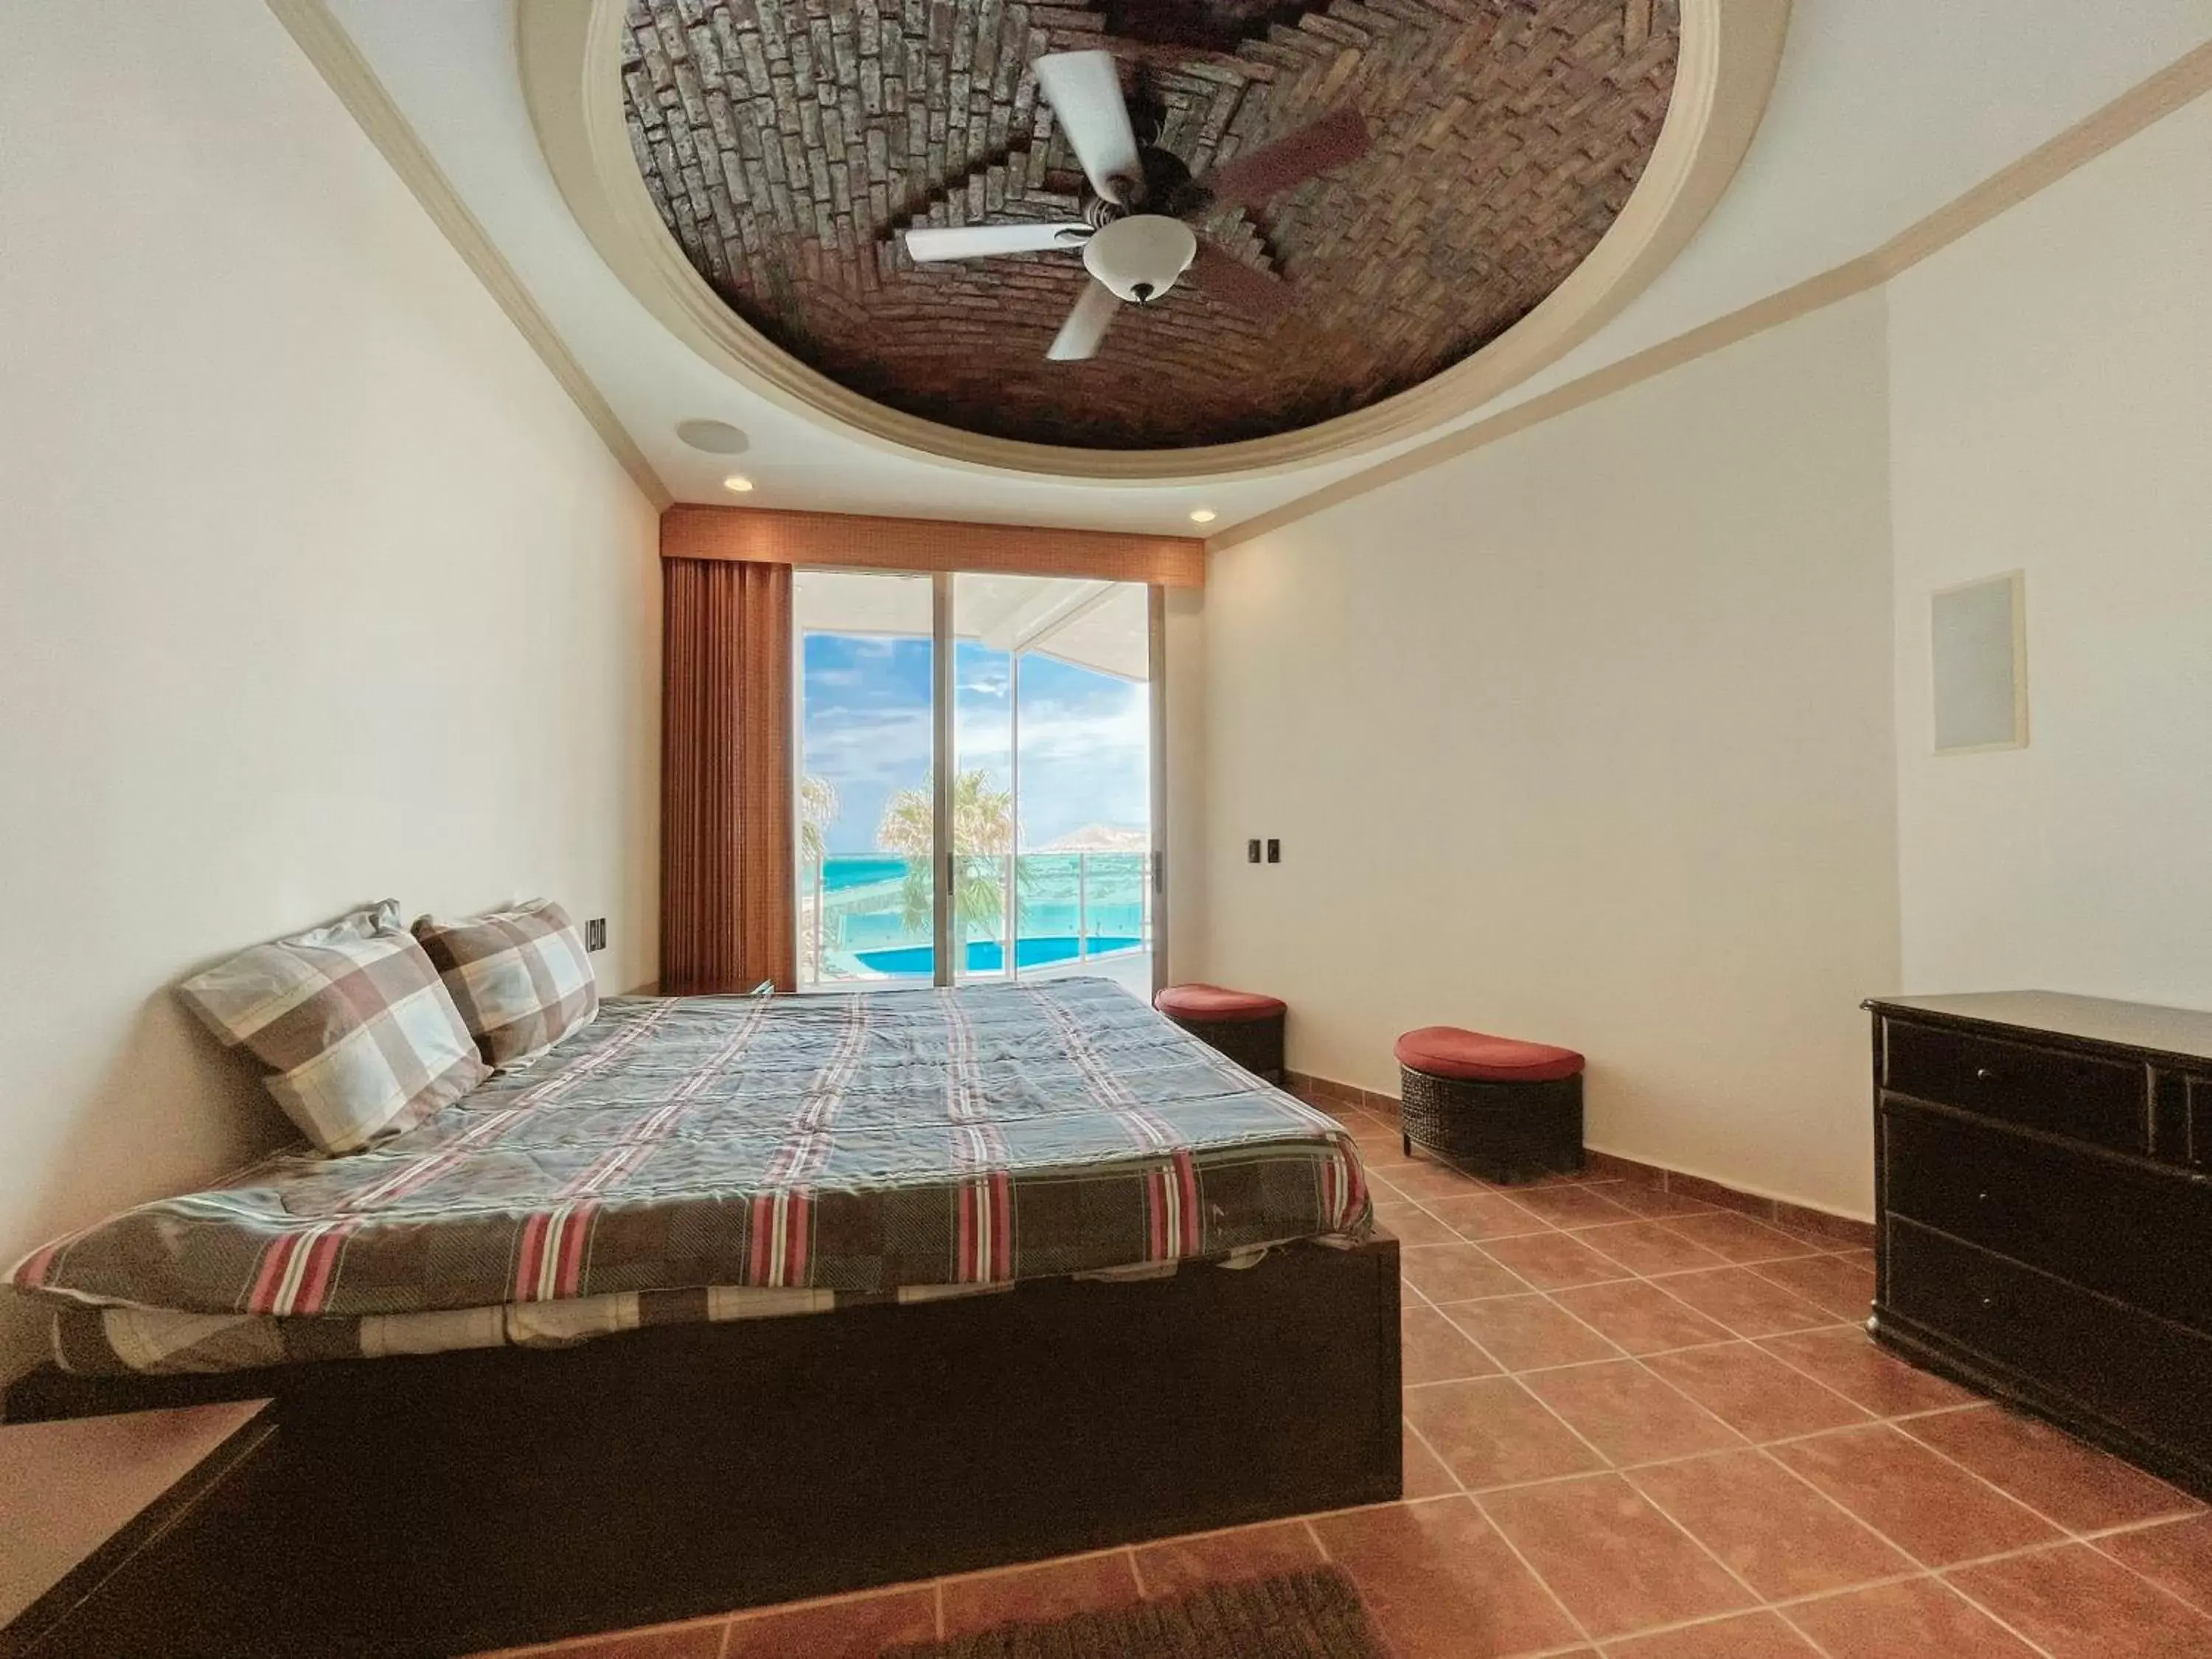 Bedroom in Esmeralda Beach Resort